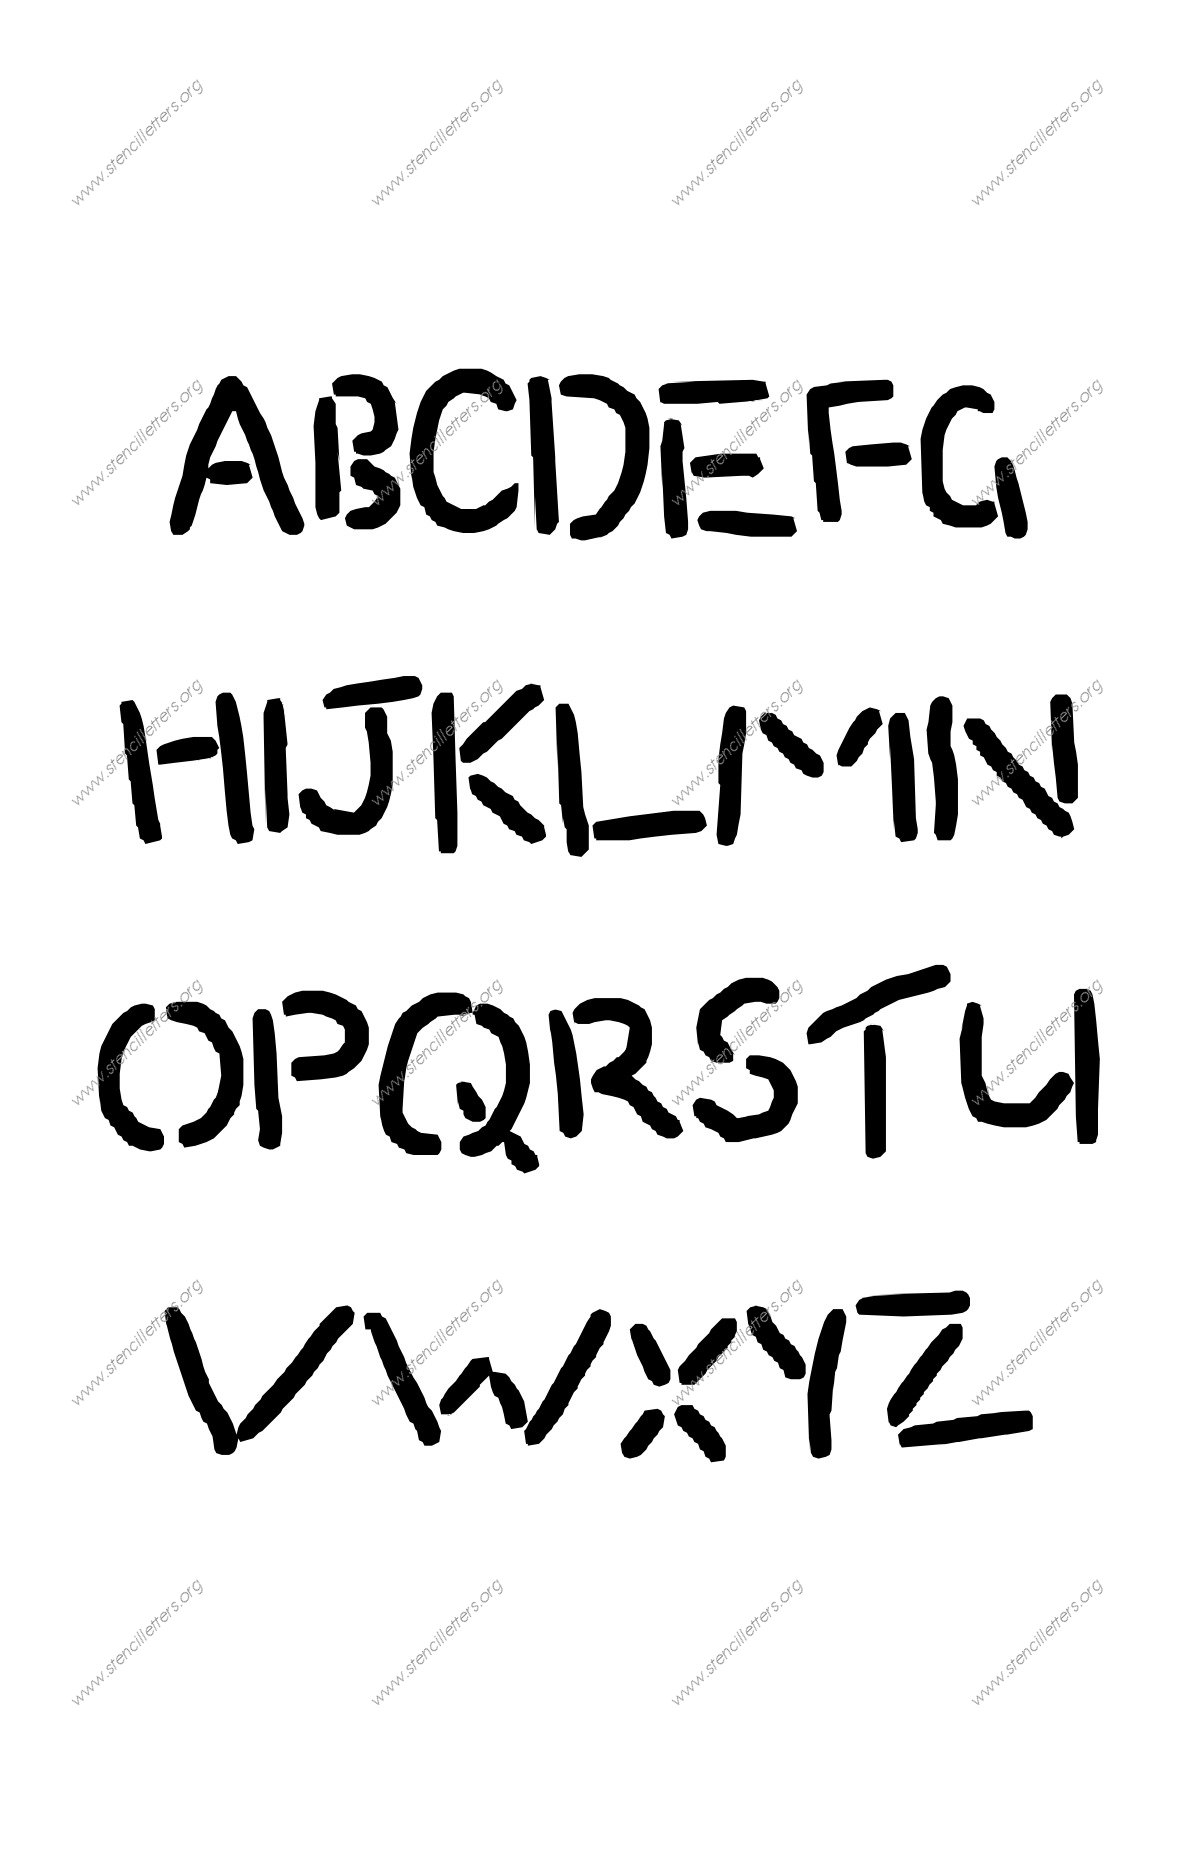 Rocky Novelty A to Z alphabet stencils